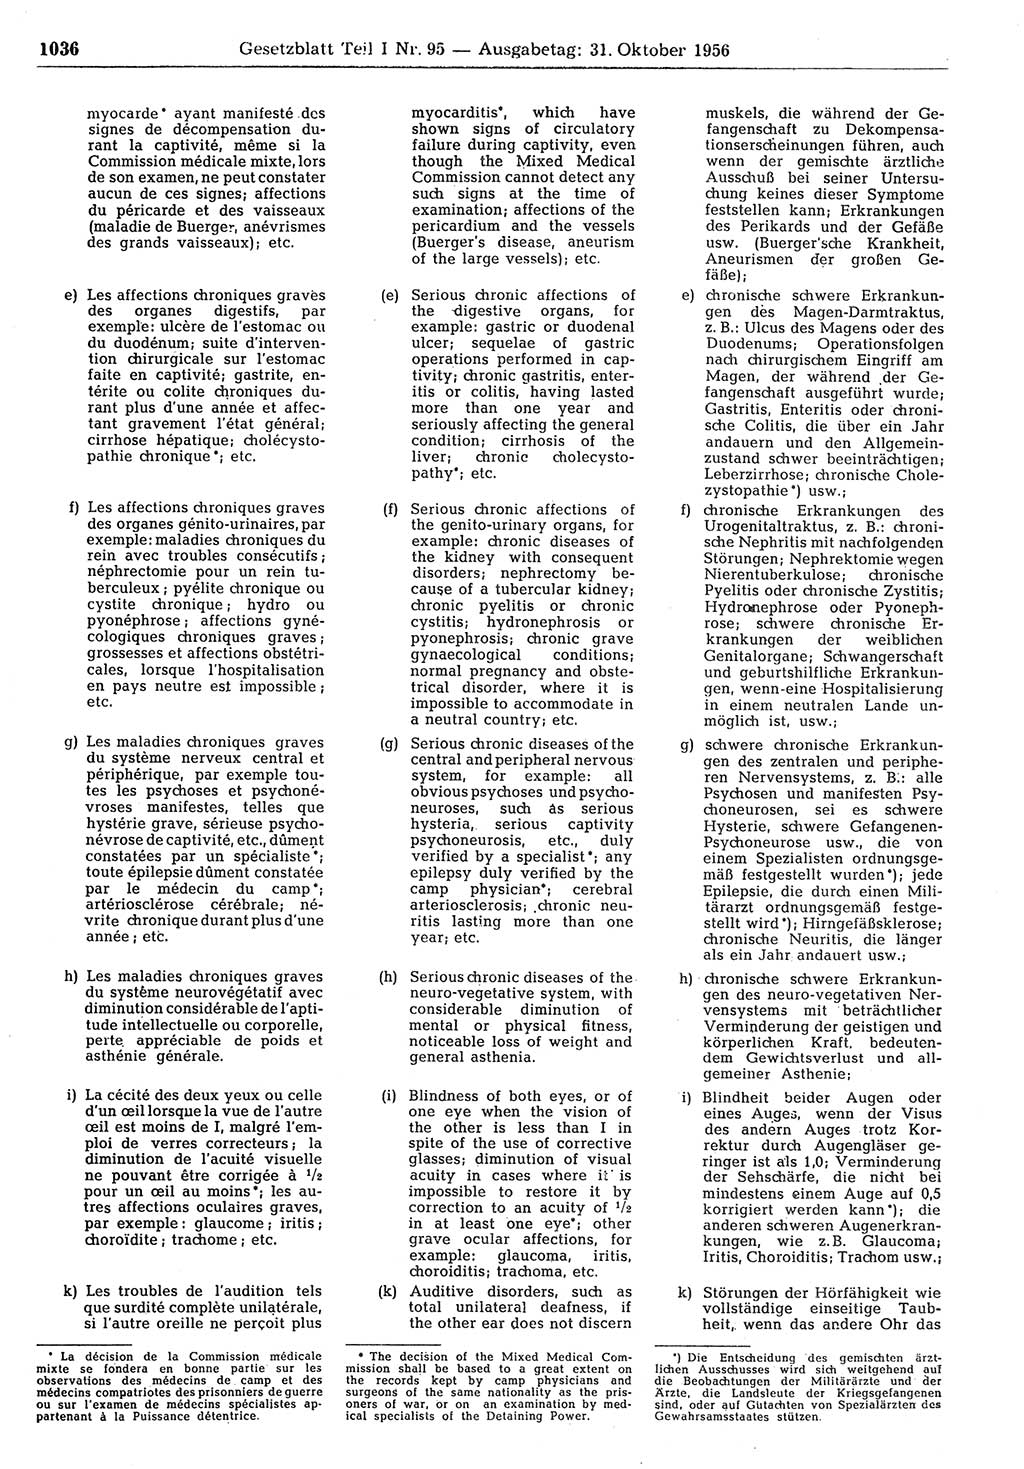 Gesetzblatt (GBl.) der Deutschen Demokratischen Republik (DDR) Teil Ⅰ 1956, Seite 1036 (GBl. DDR Ⅰ 1956, S. 1036)